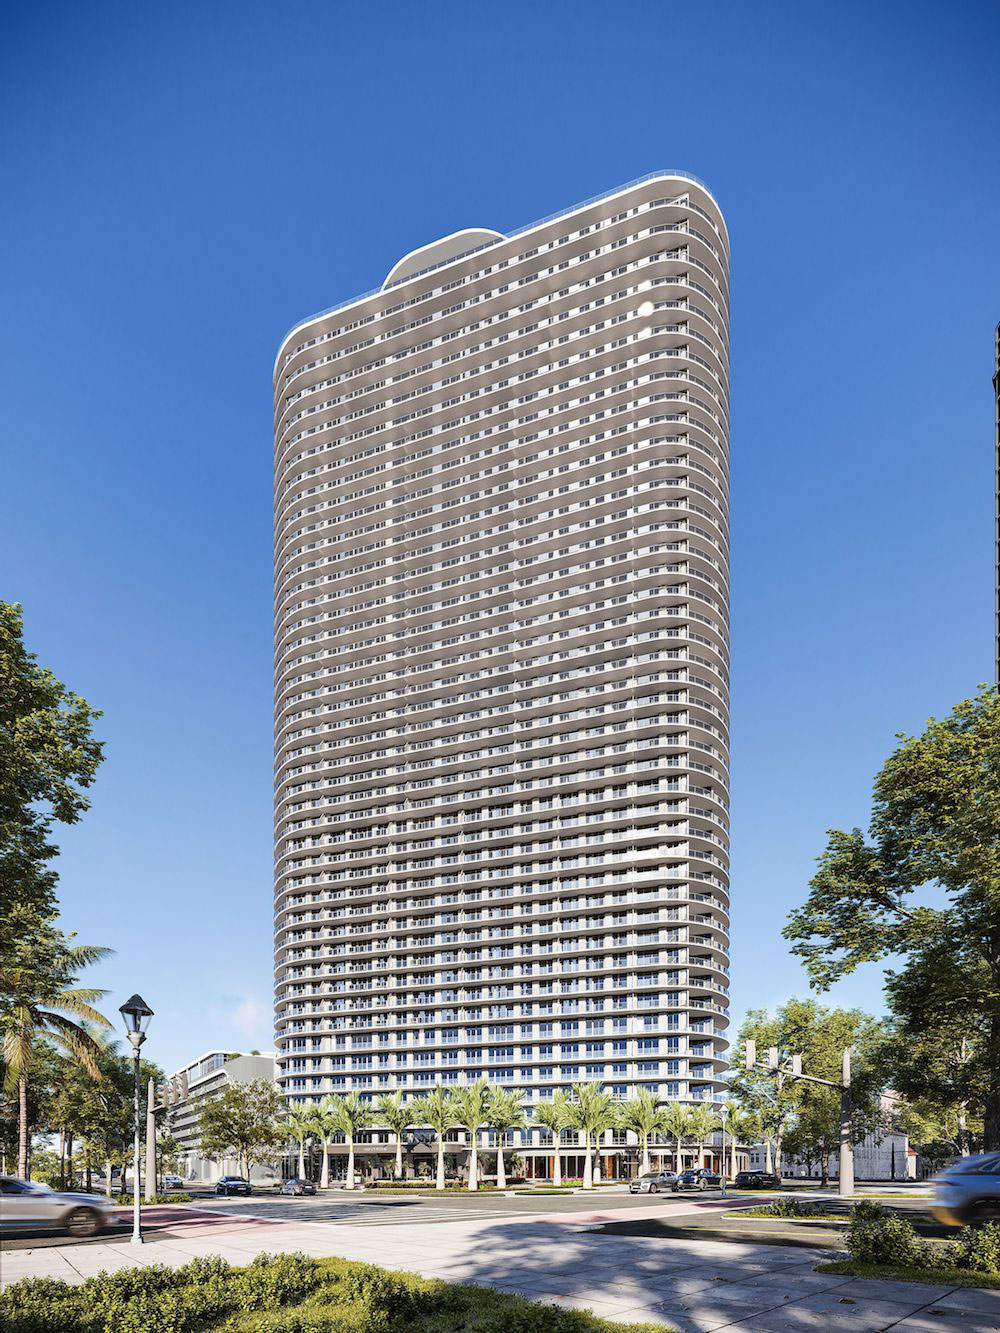 Μακέτα του The Residences, του υψηλότερου ουρανοξύστη που χτίζεται στη Φλόριντα από τον Έλληνα ομογενή Τζον Κατσιματίδη